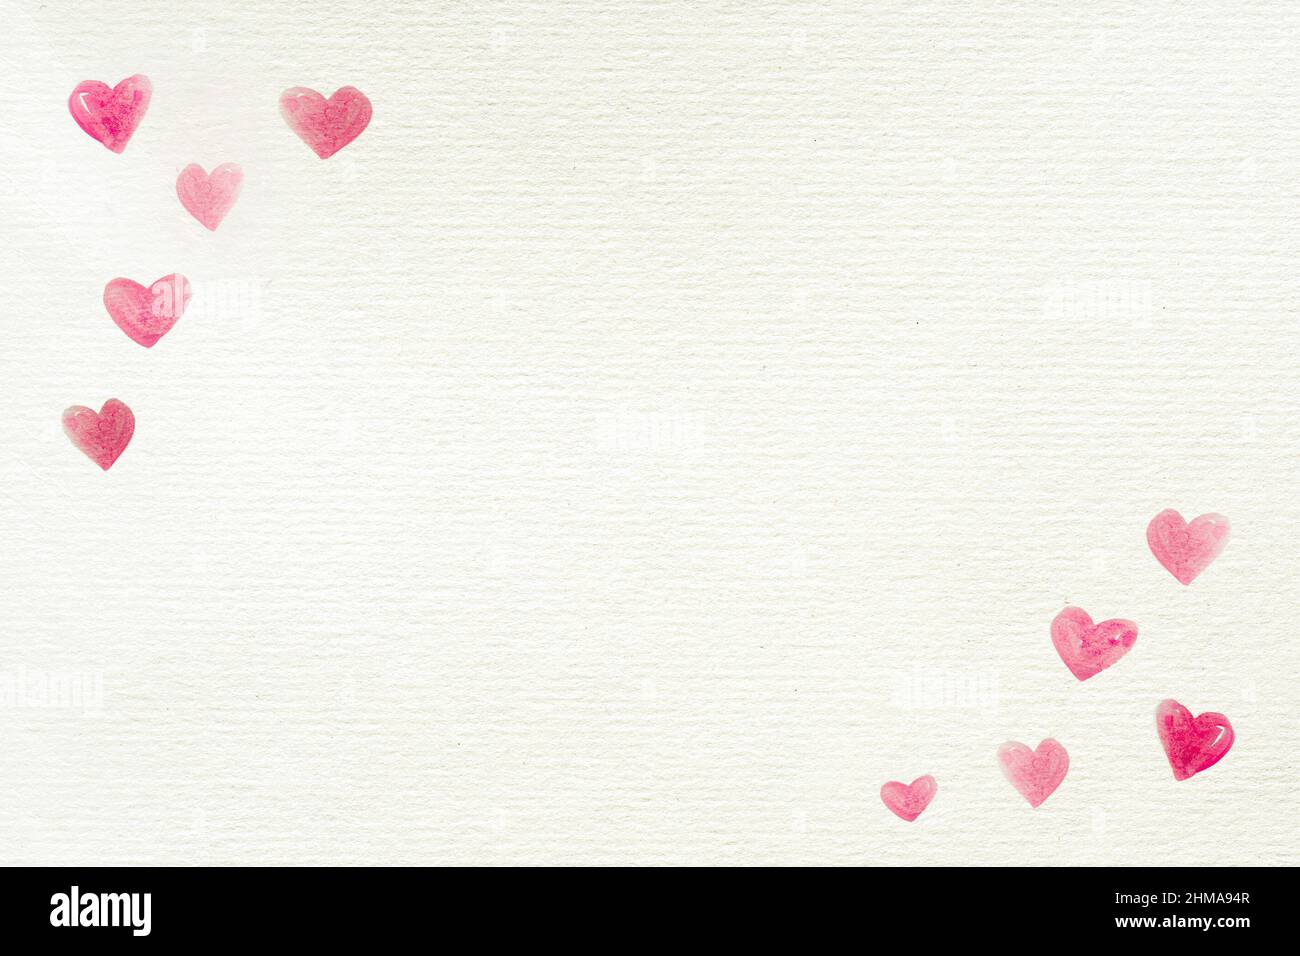 El fondo del amor con corazones pintados en las esquinas en un papel blanco reciclado para el día de San Valentín u otras celebraciones, carta, espacio de copia Foto de stock